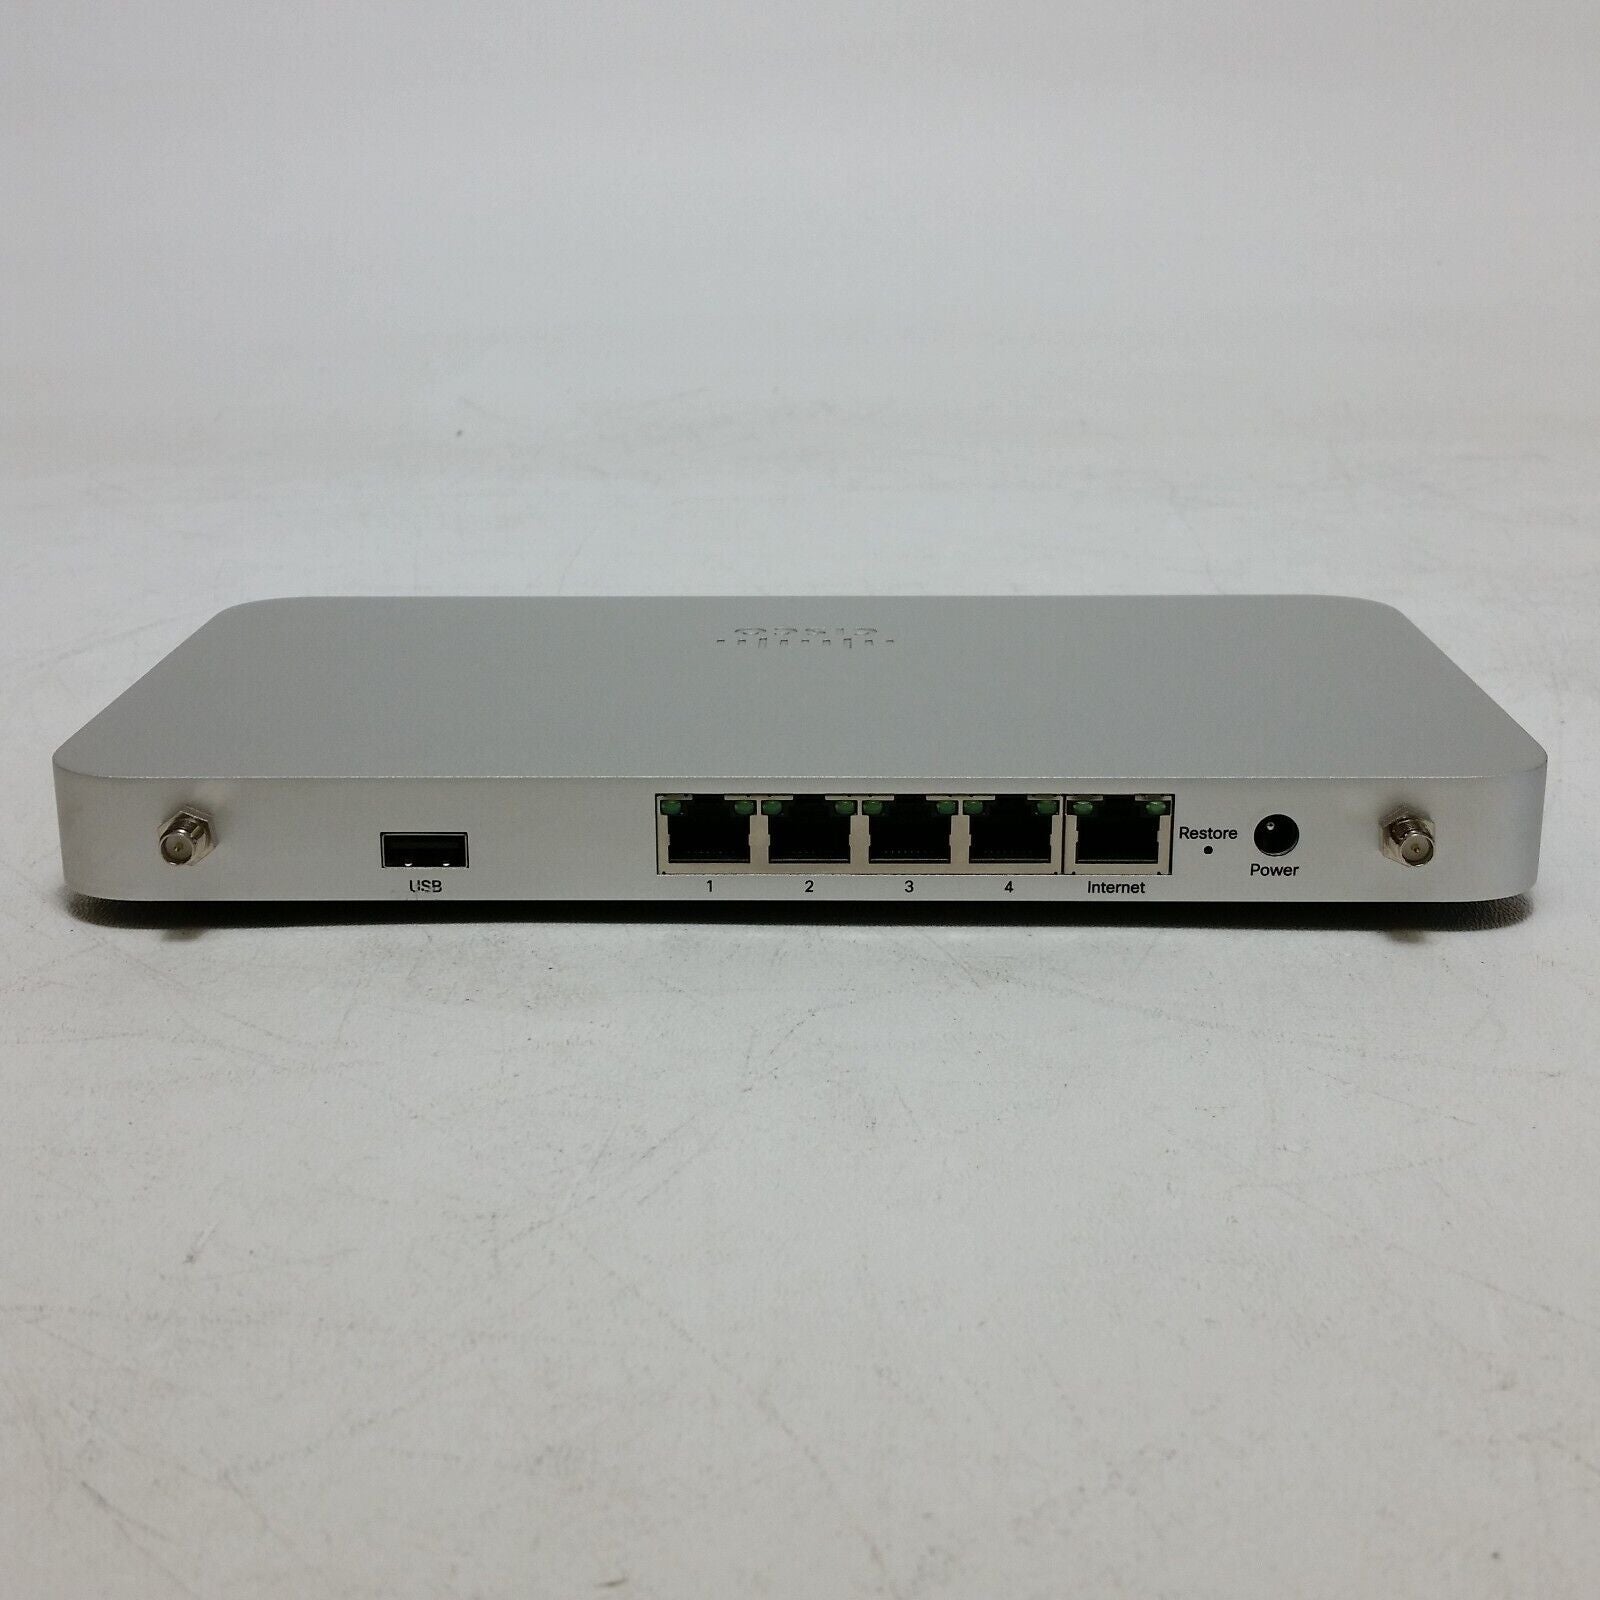 Cisco Meraki Cloud Managed Switch, LAN Capable, White at Rs 341256